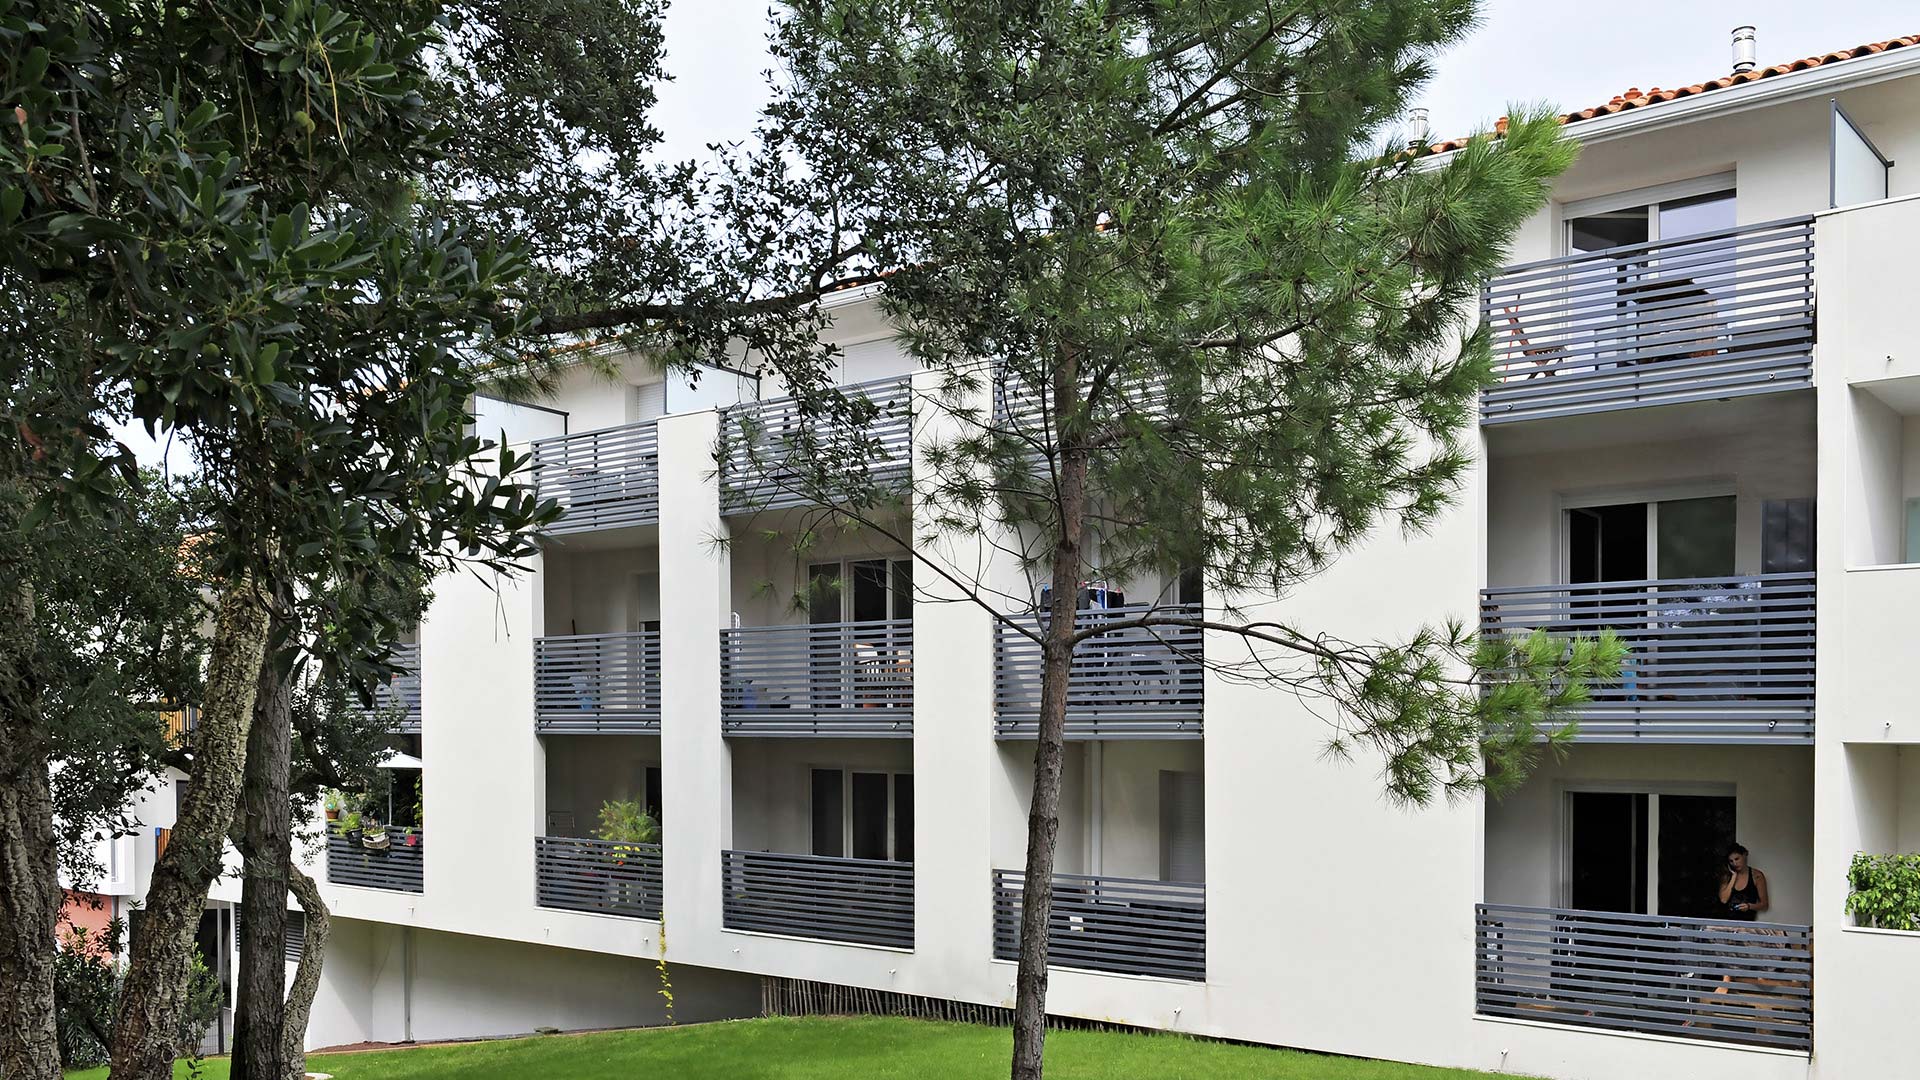 Appartements neufs avec balcons donnant sur un espace boisé à Bayonne Labenne.